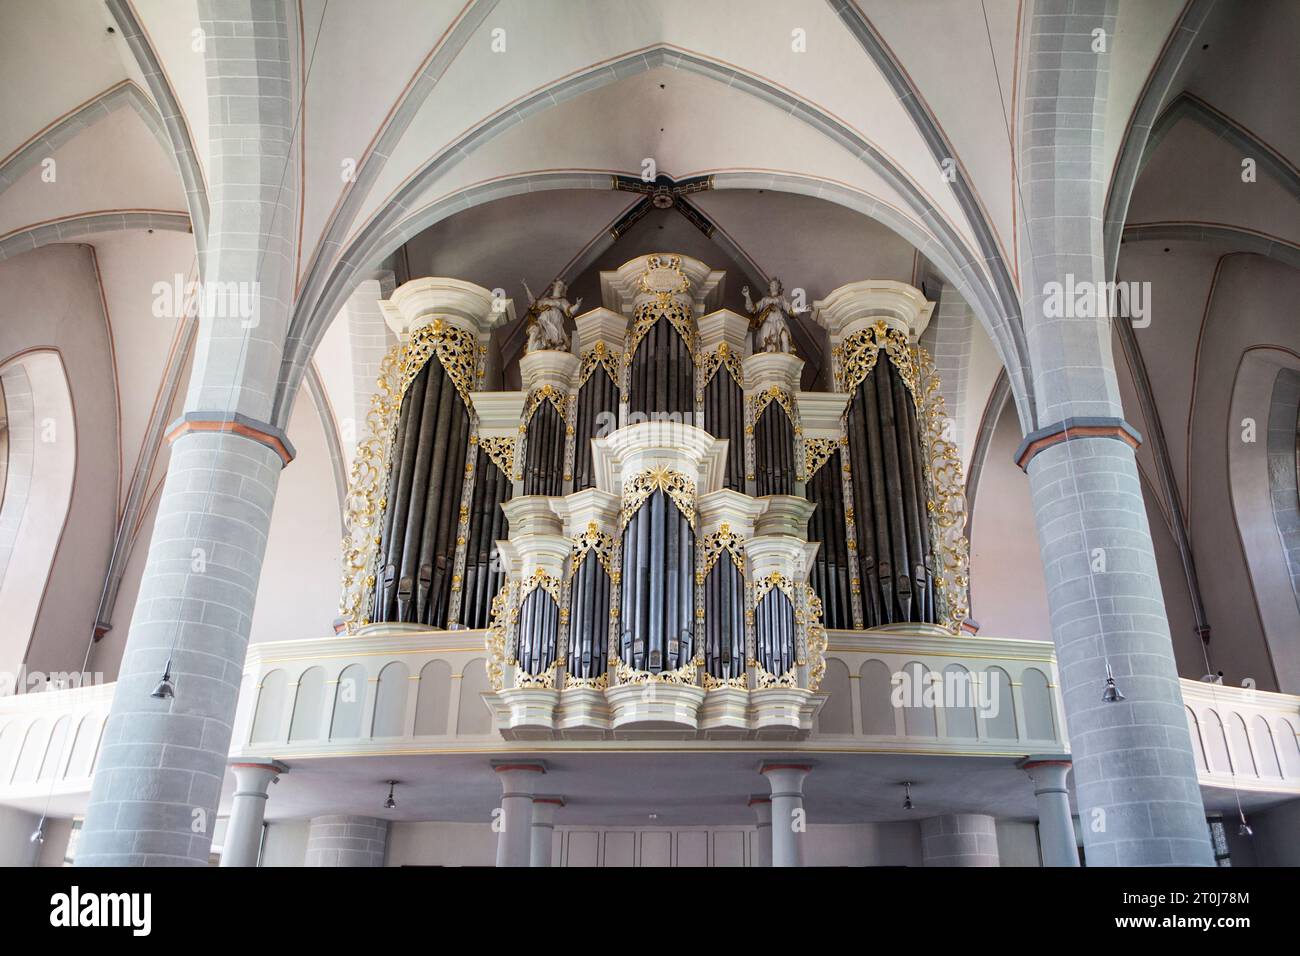 L'organo barocco della chiesa parrocchiale cattolica di San Johannes Baptist, Borgentreich, distretto di Höxter, Renania settentrionale-Vestfalia, Germania, Europa Foto Stock